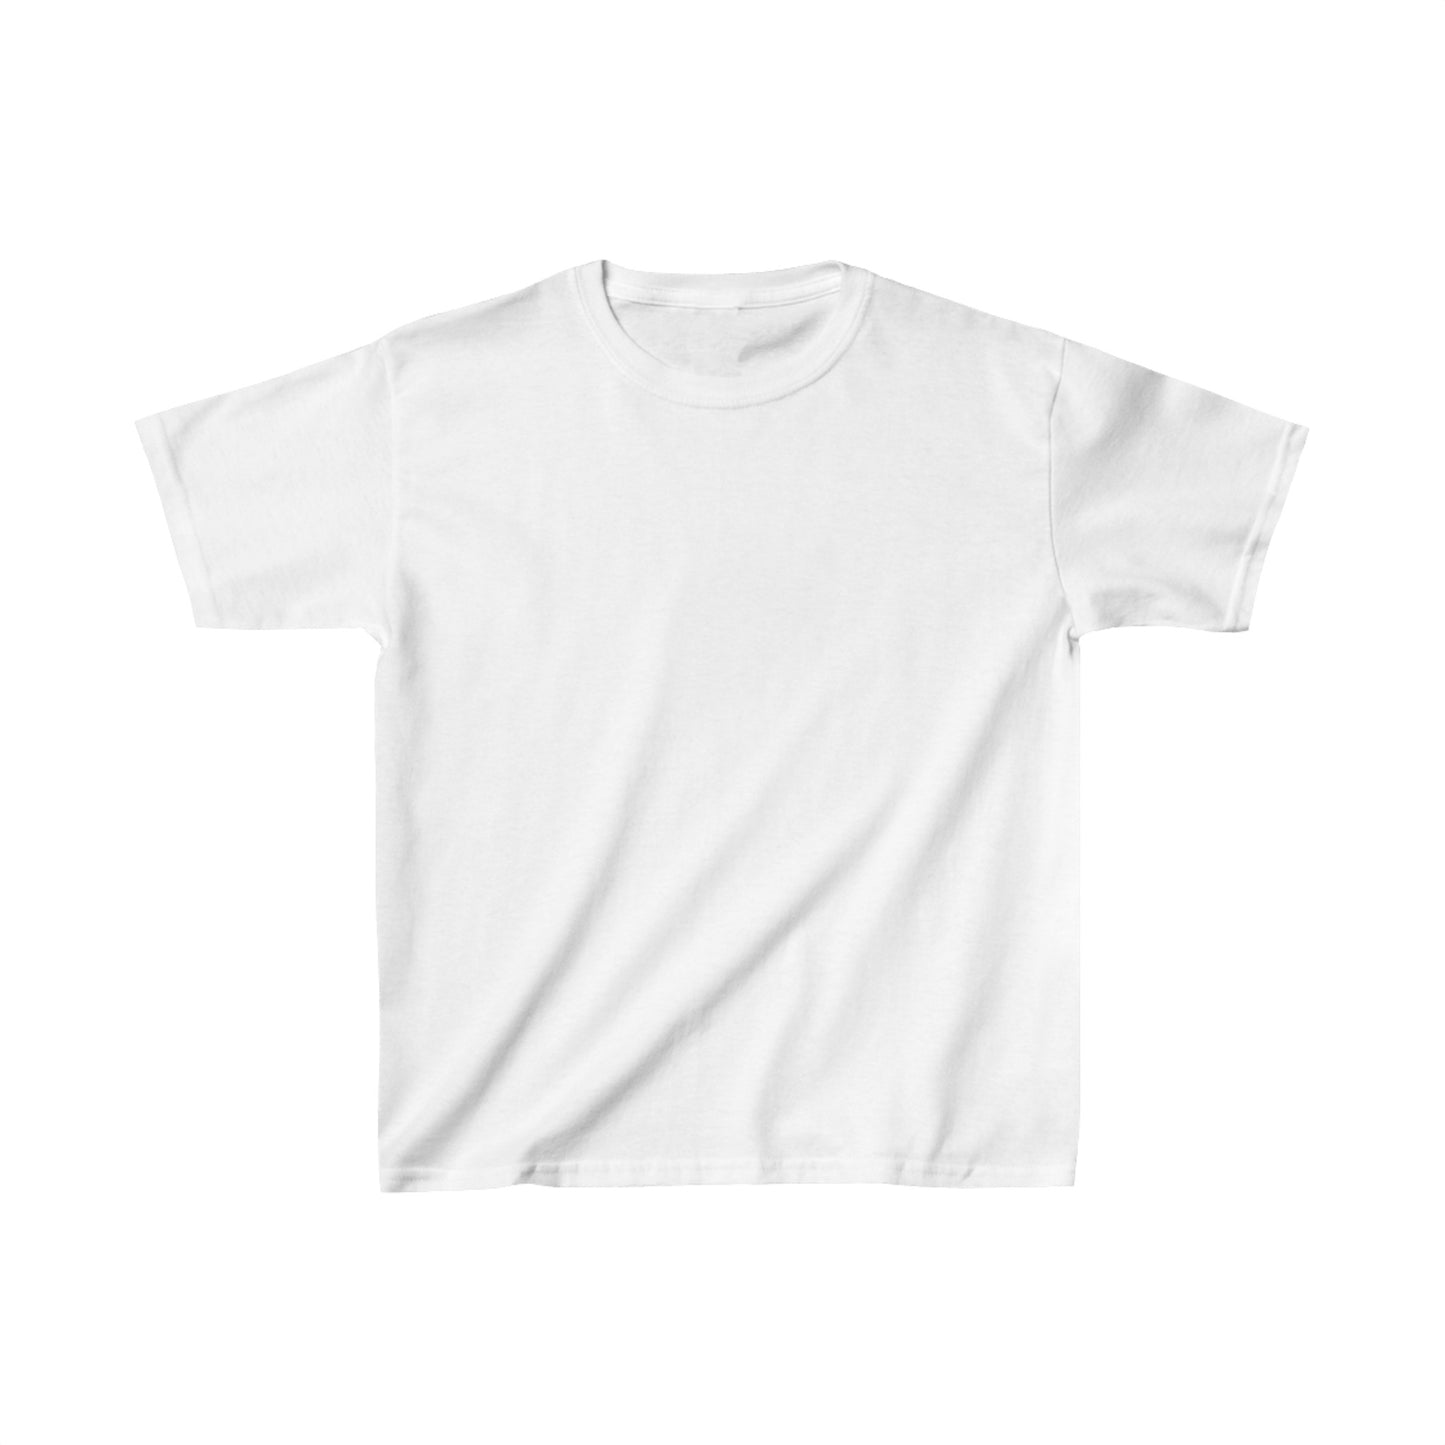 God's Got My Back Boys Tshirt (White Logo - Back)